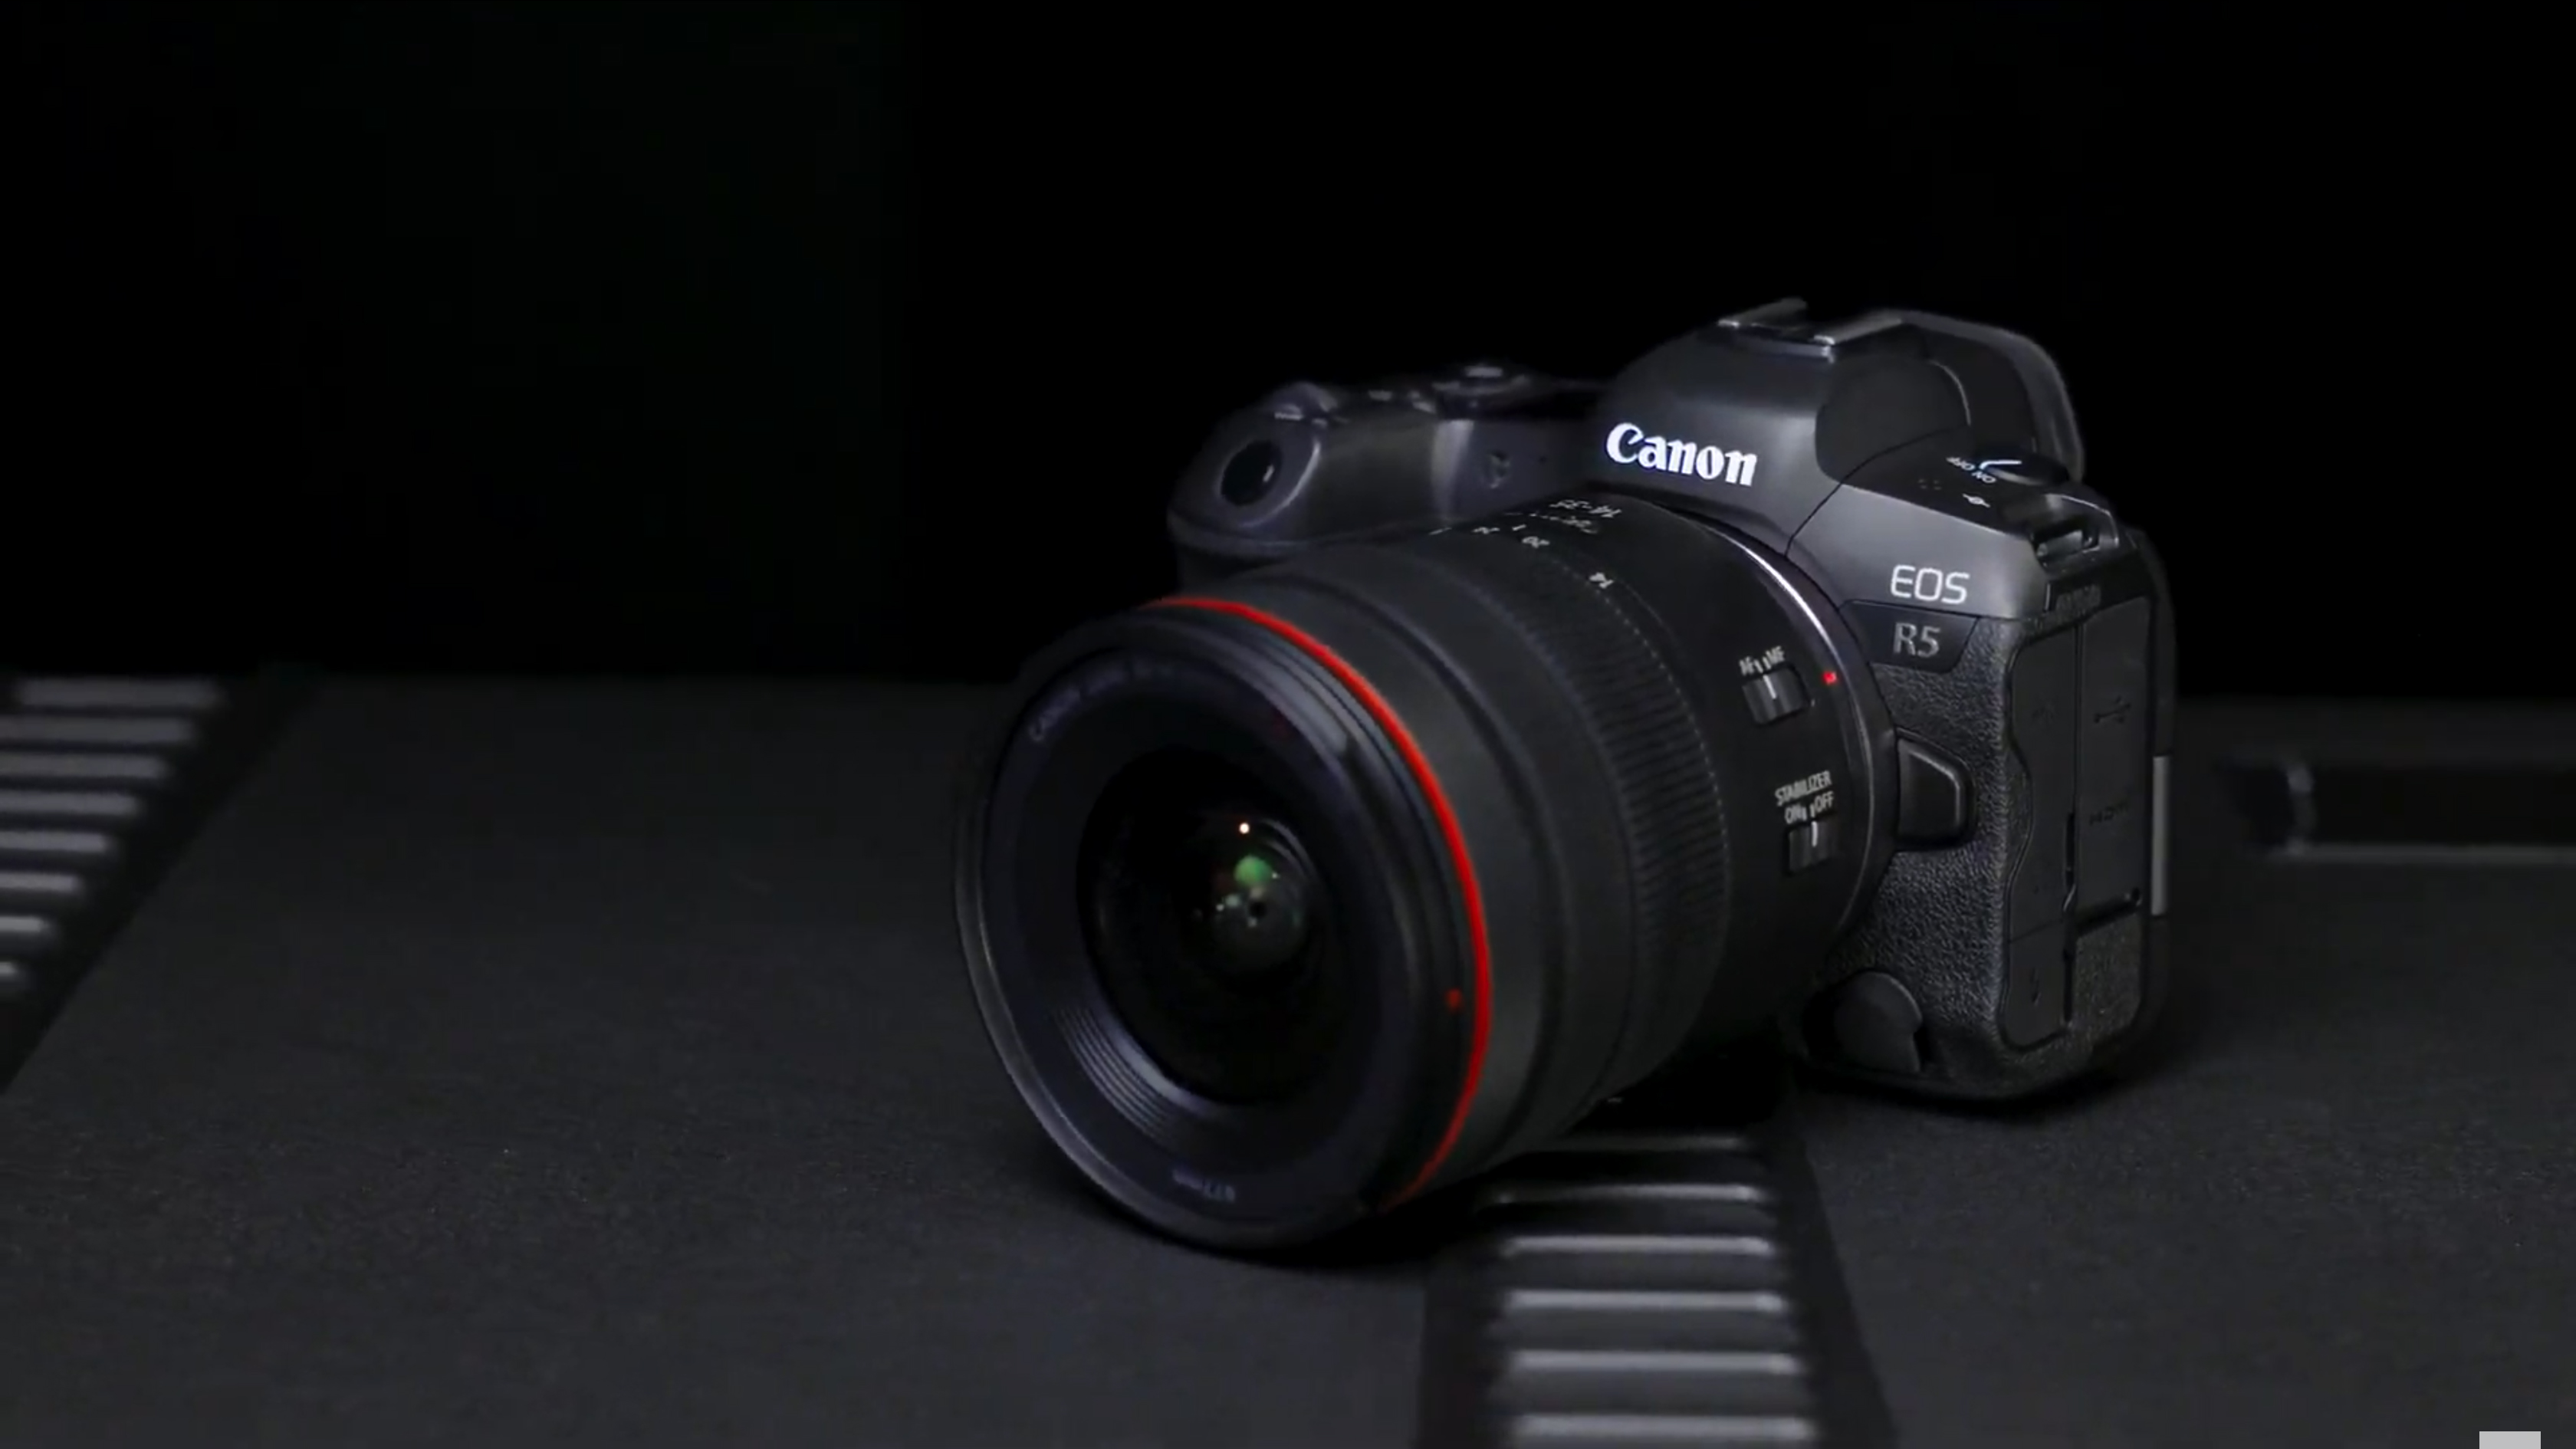 The Canon EOS R5C camera